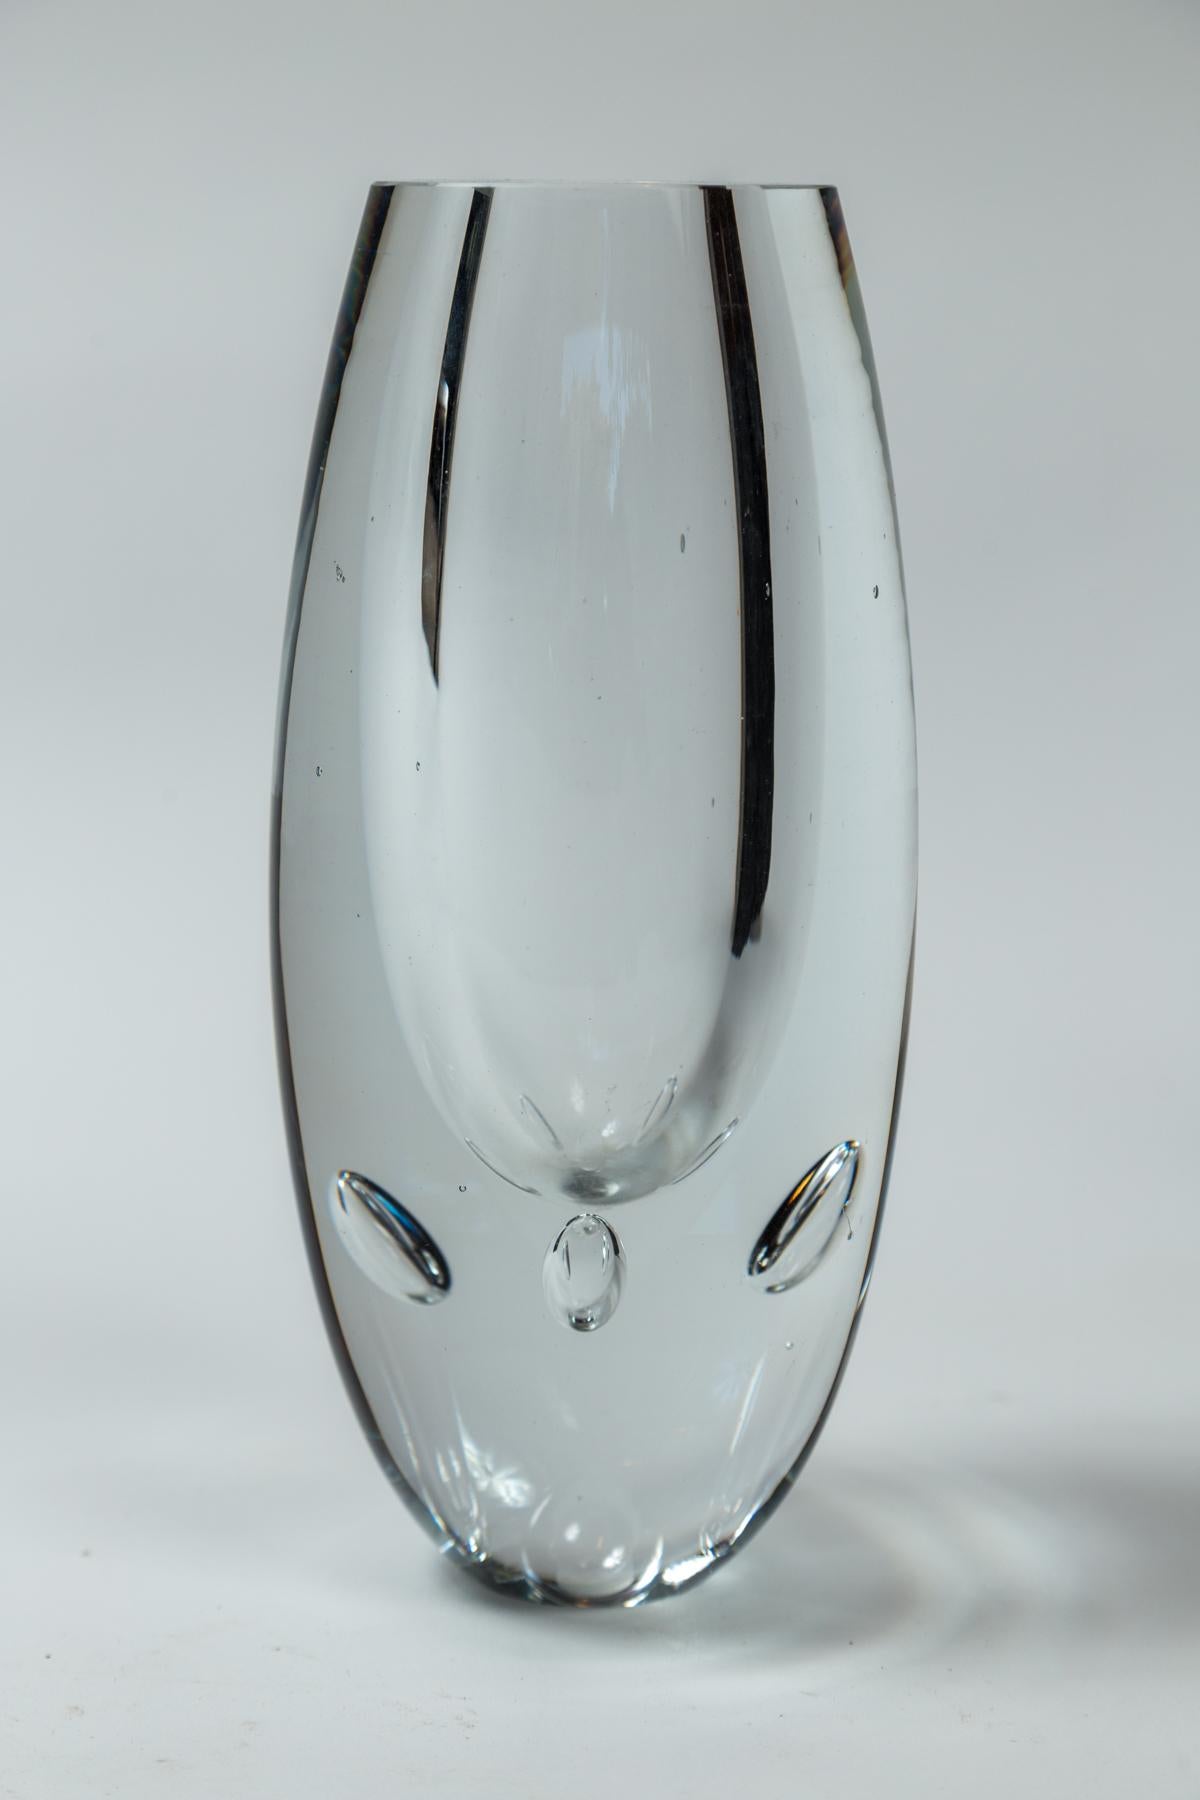 Vase en verre vintage, Timo Sarpeneva, Finlande. Vase lourd en verre soufflé avec des bulles internes. Un design emblématique du célèbre designer scandinave Timo Sarpeneva. Signature gravée sur le fond.